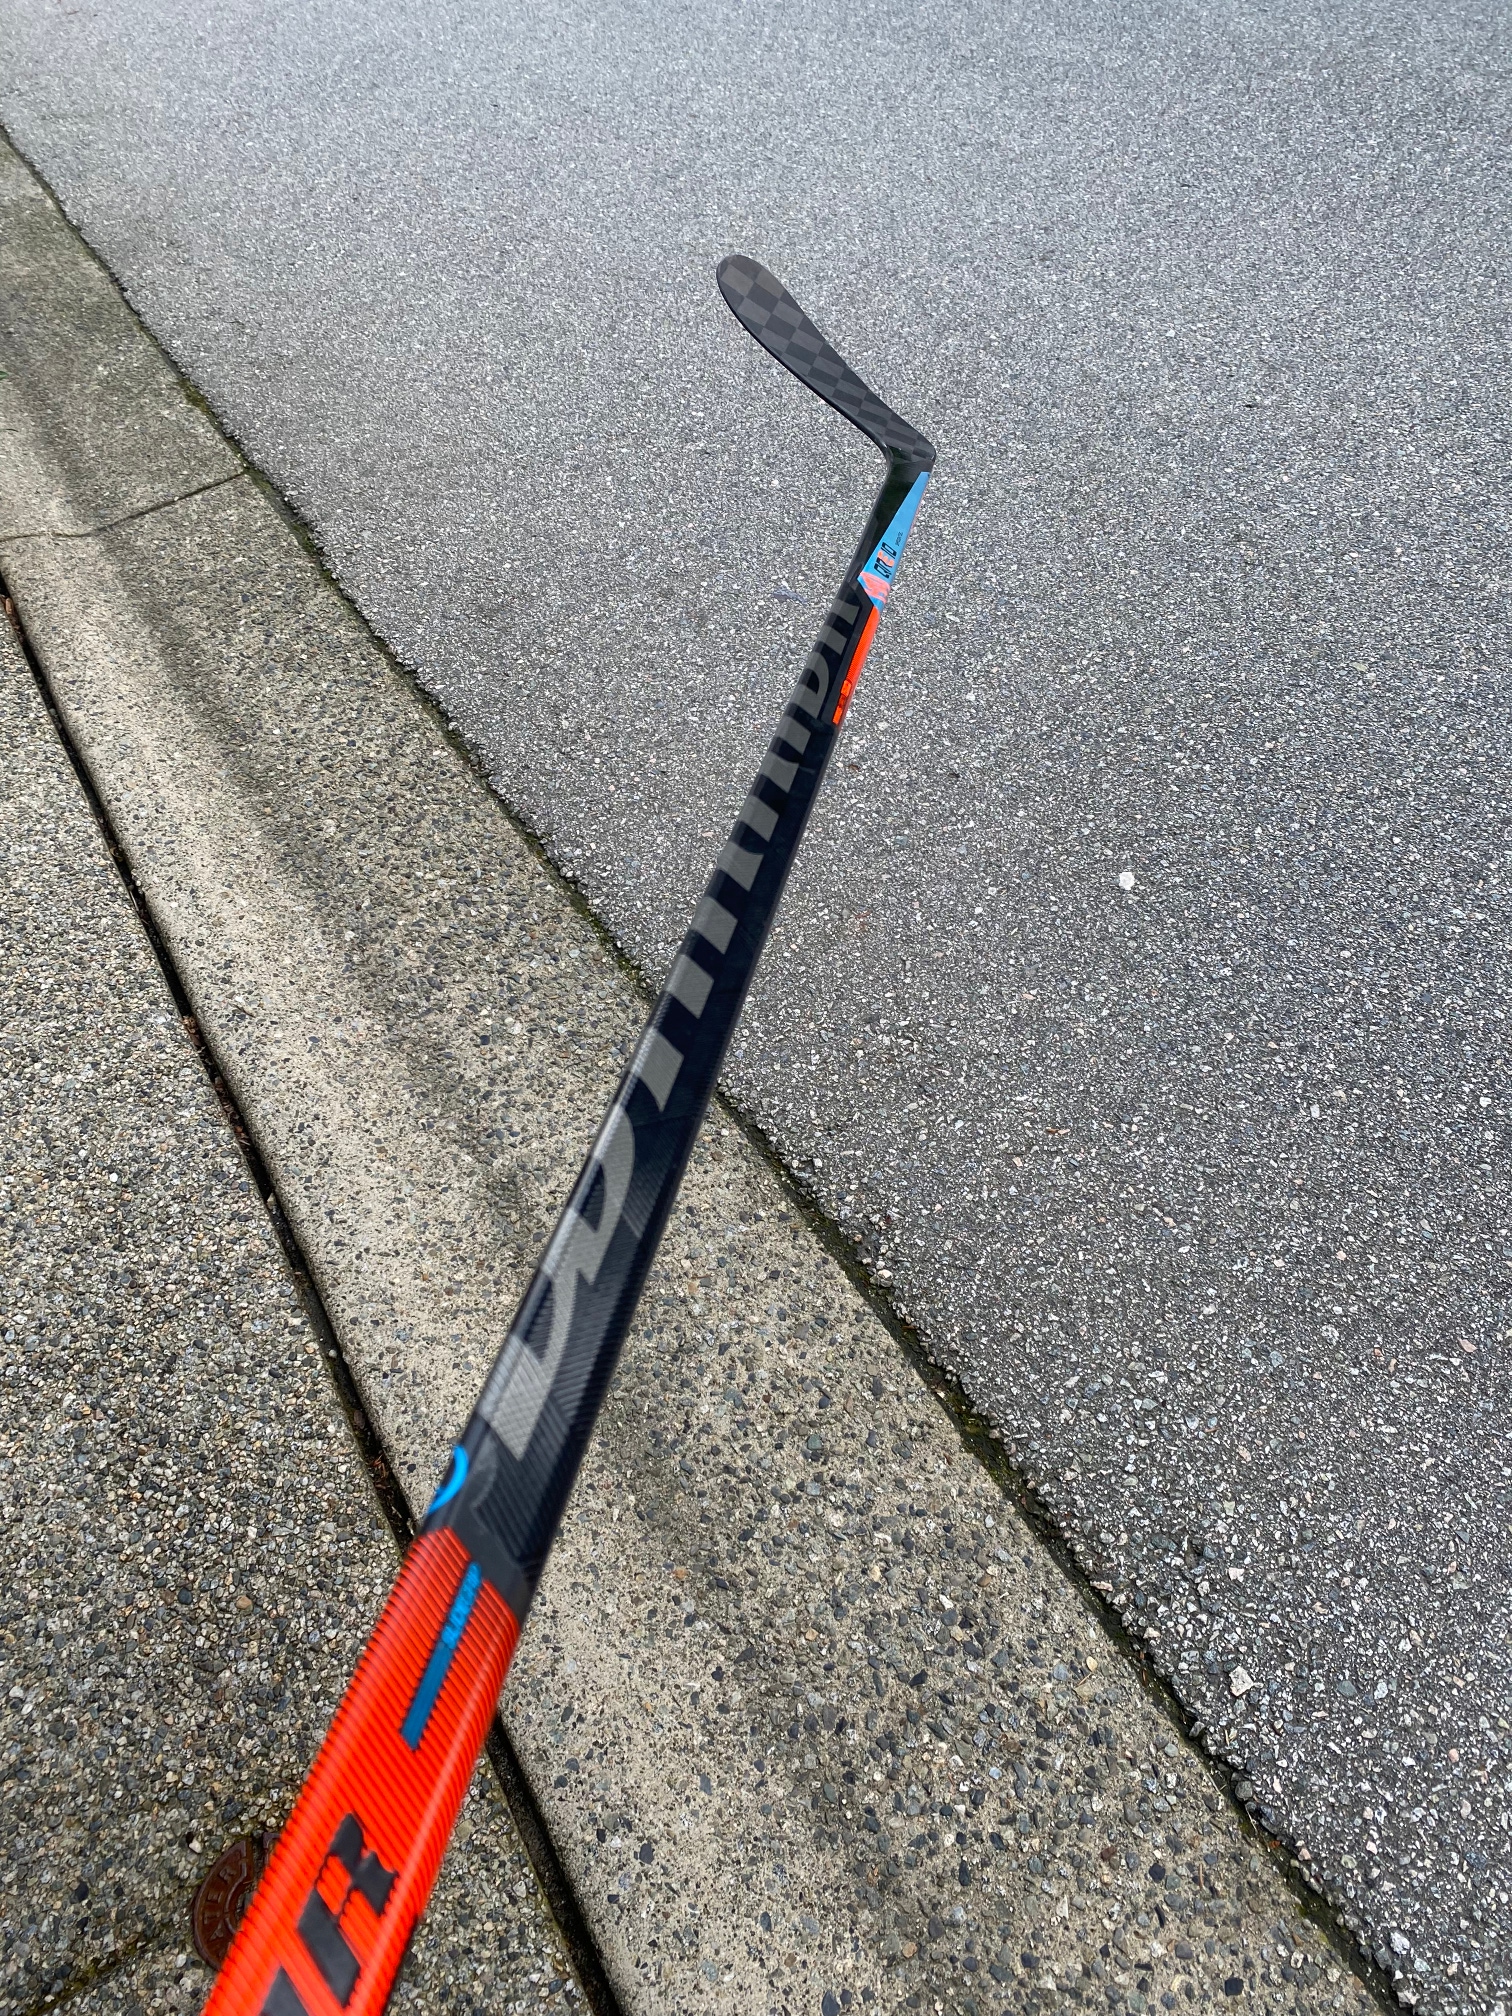 NEW Warrior Covert QRE10 Hockey Stick (W28/63 flex)